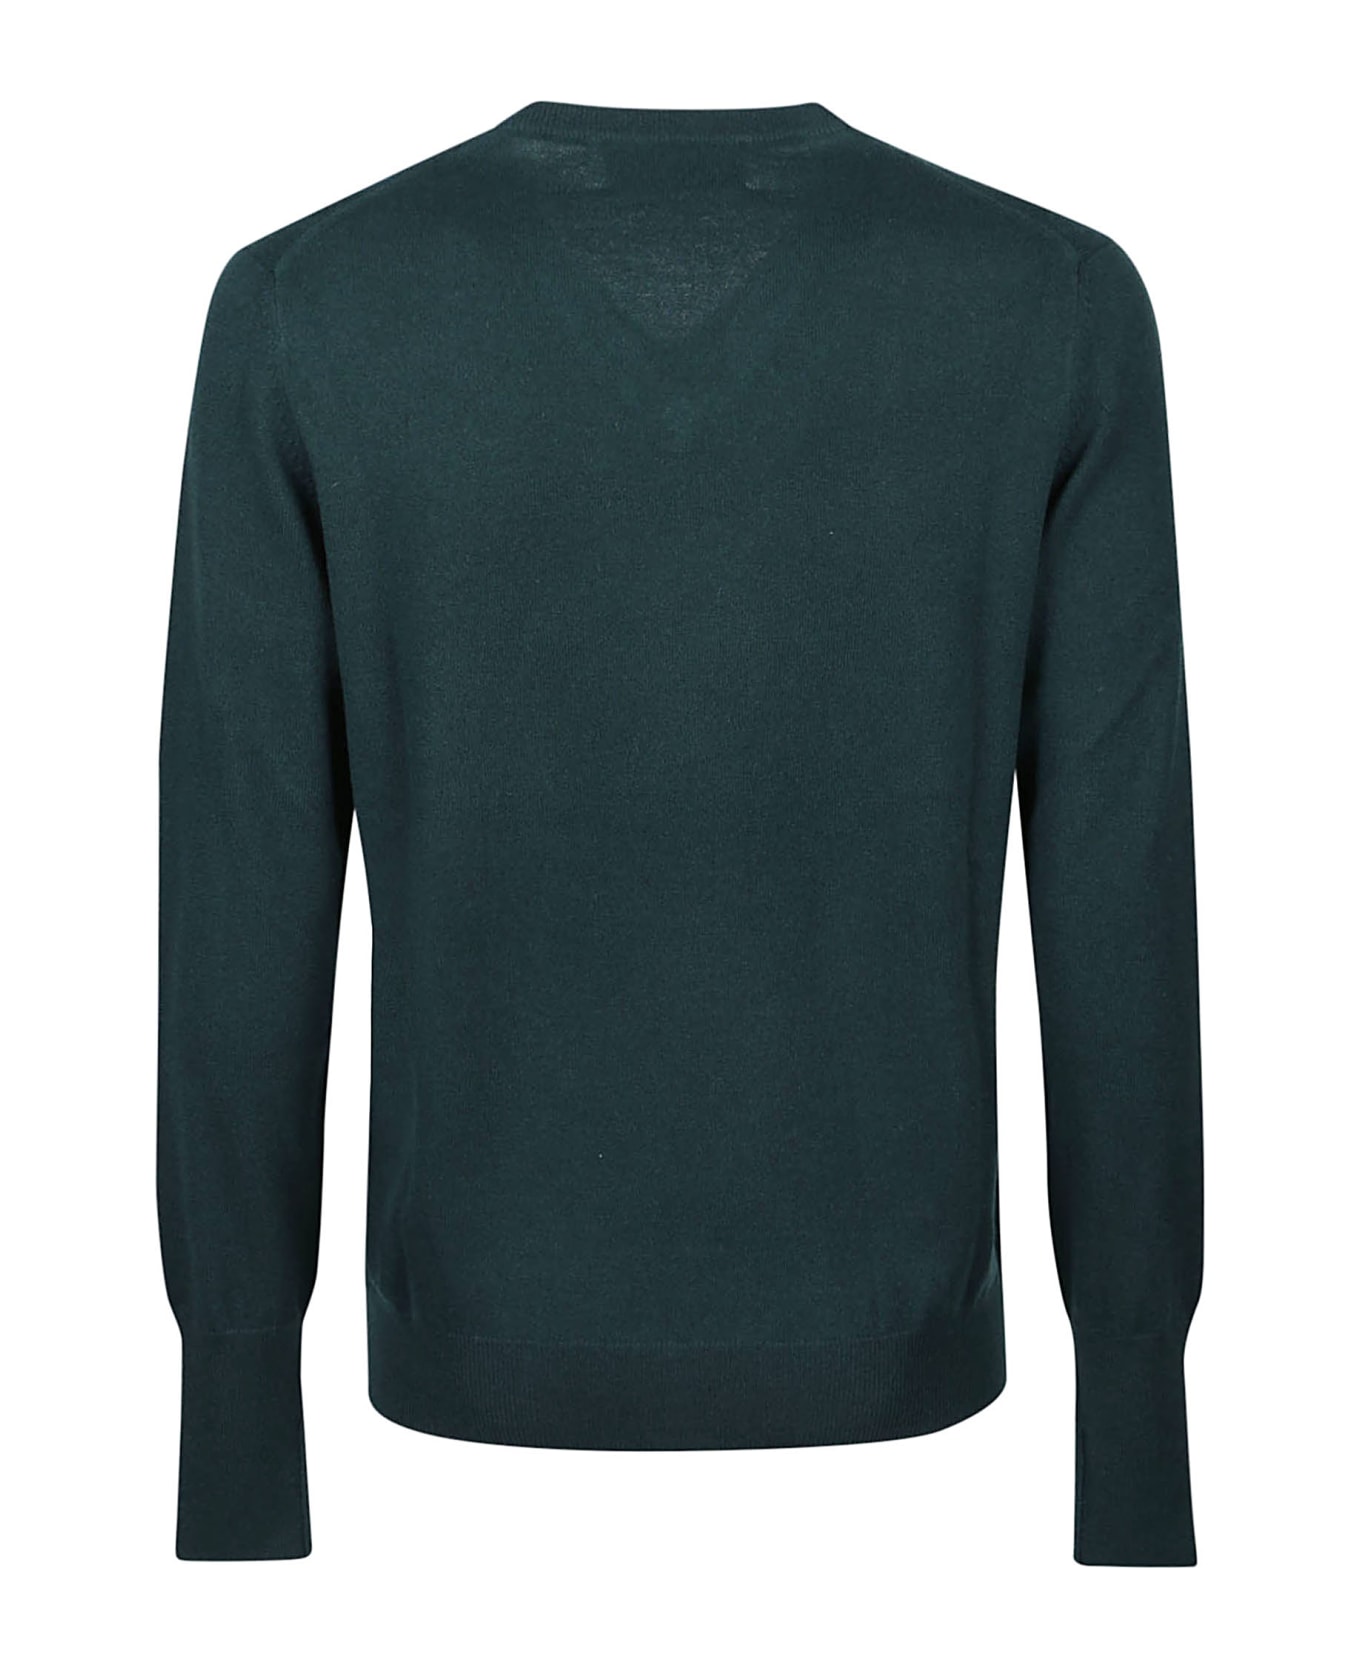 Ballantyne Plain V-neck Sweater - Vetro ニットウェア